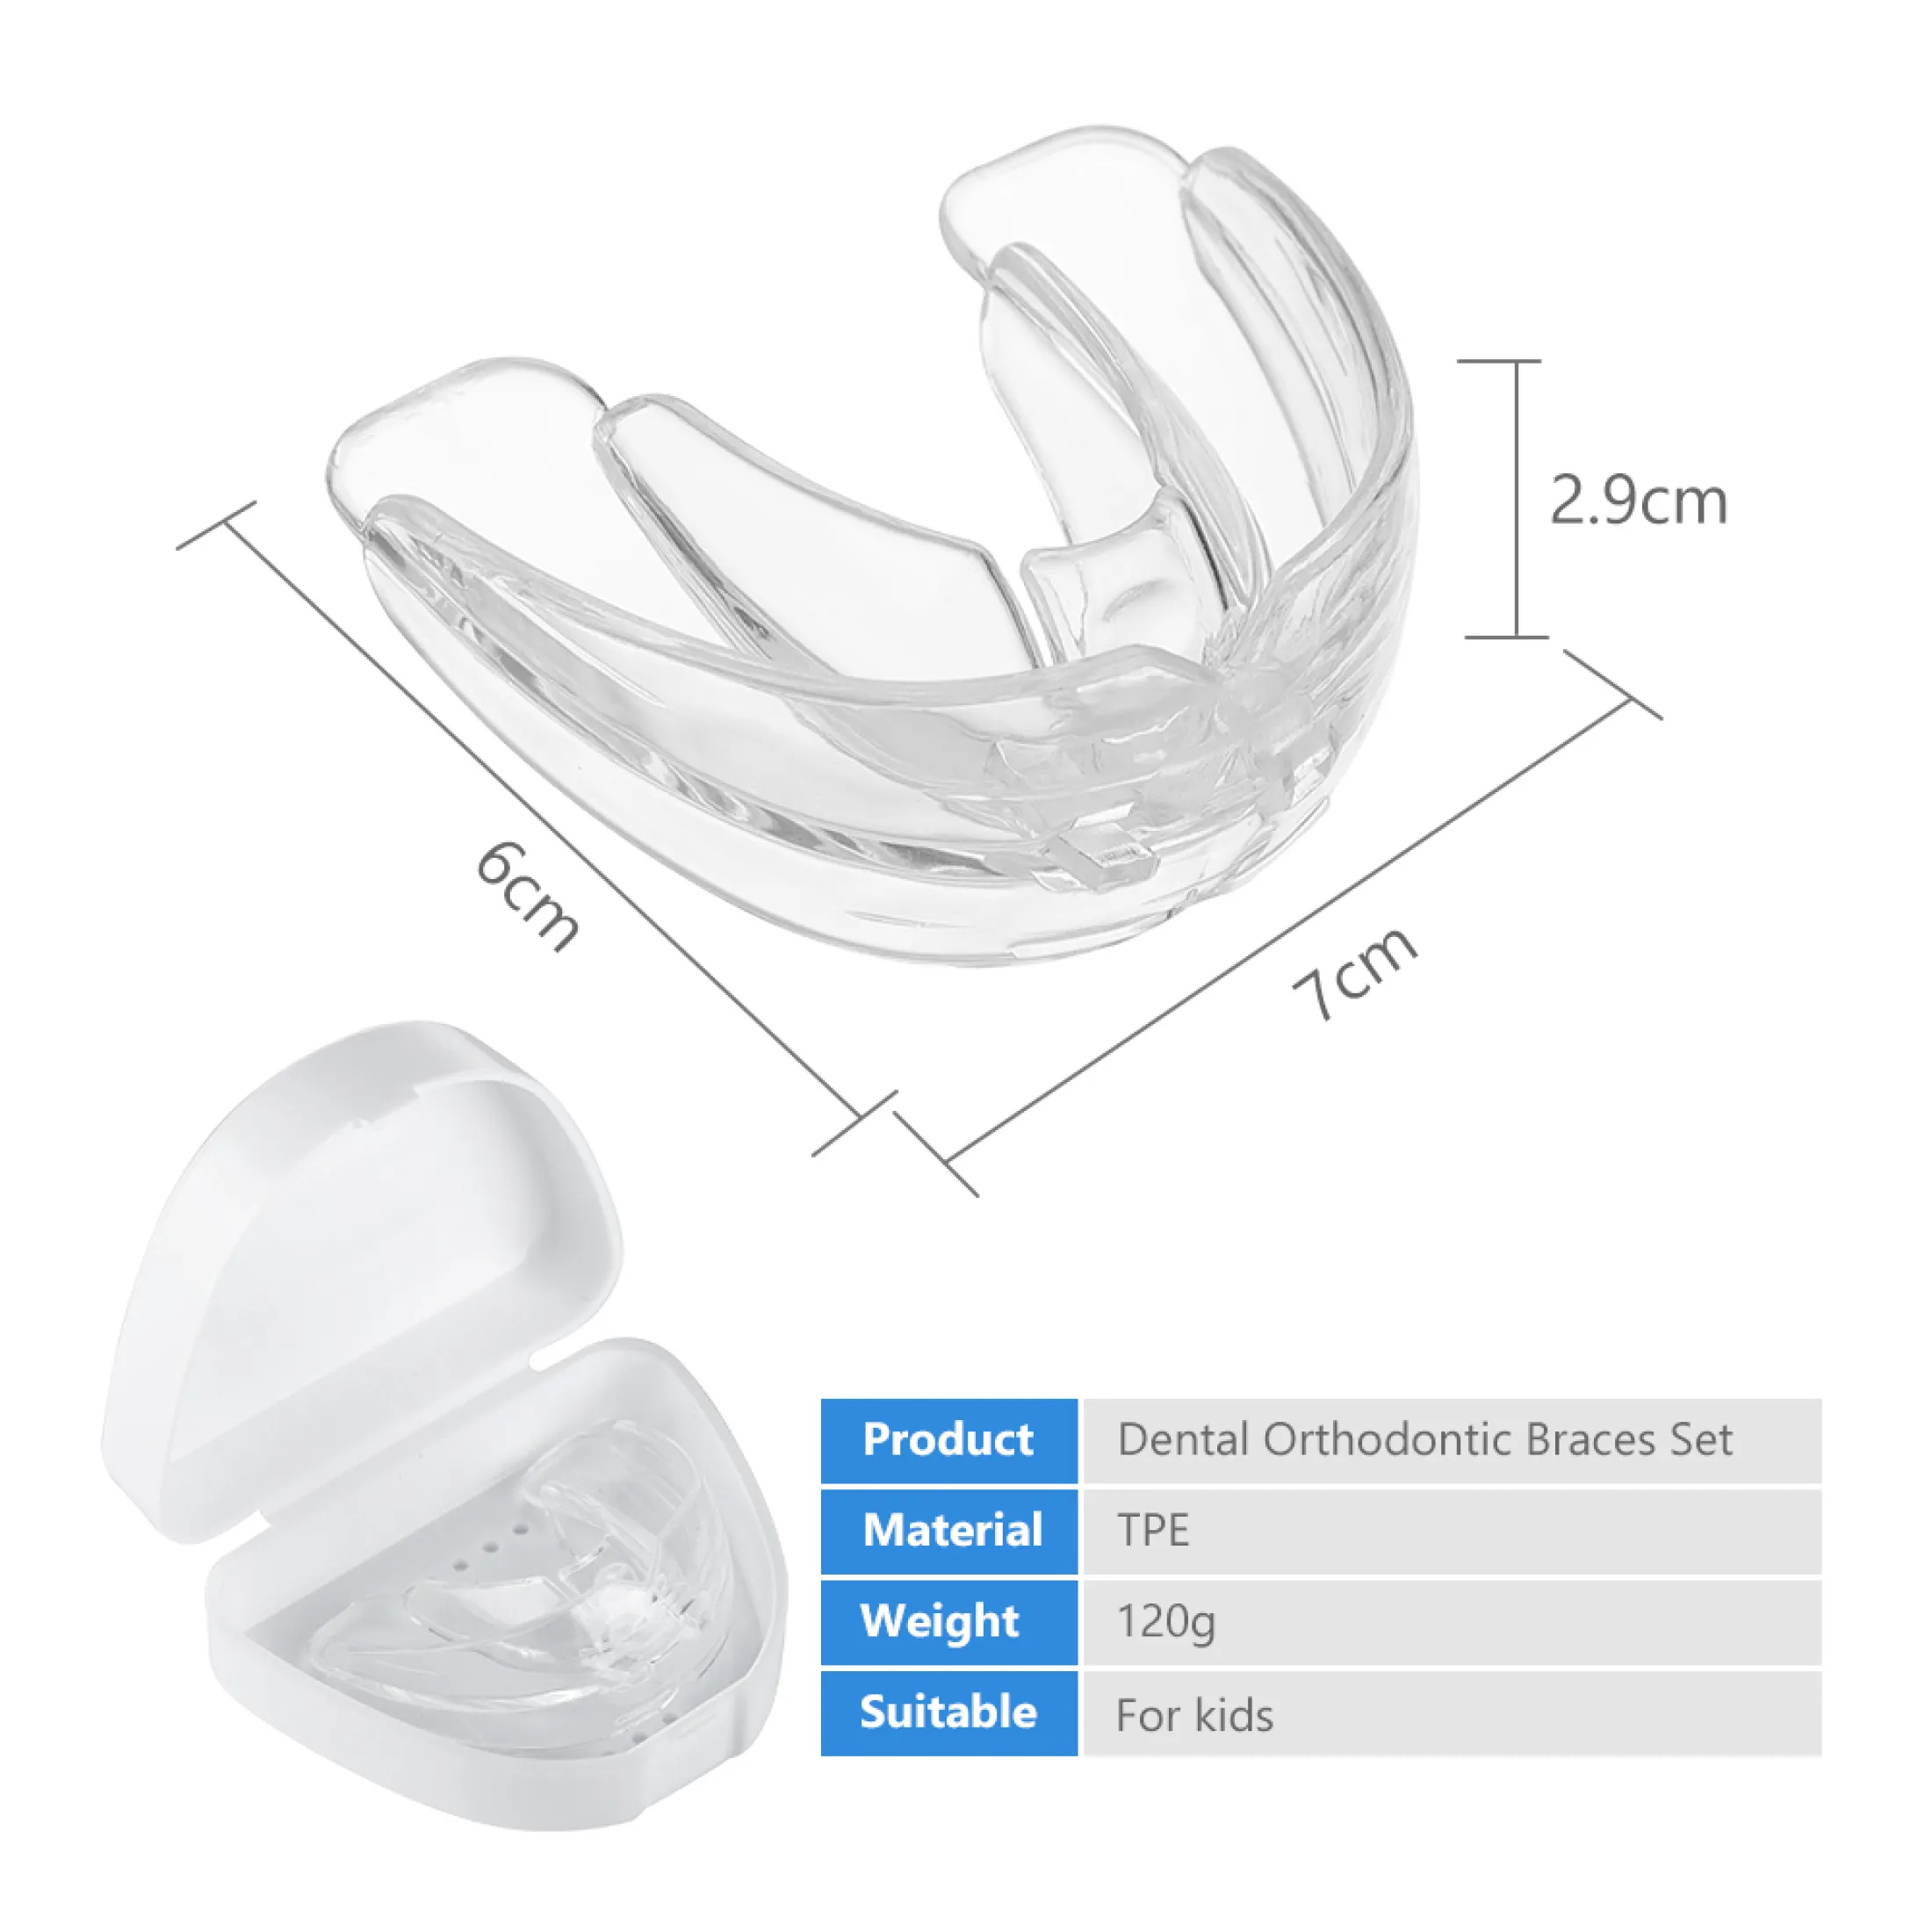 hailicare bộ niềng răng chỉnh nha nha khoa dụng cụ chỉnh răng bằng silicon 3 giai đoạn dụng cụ giữ răng dụng cụ giữ răng dụng cụ chỉnh răng dụng cụ duỗi răng cho trẻ em 10